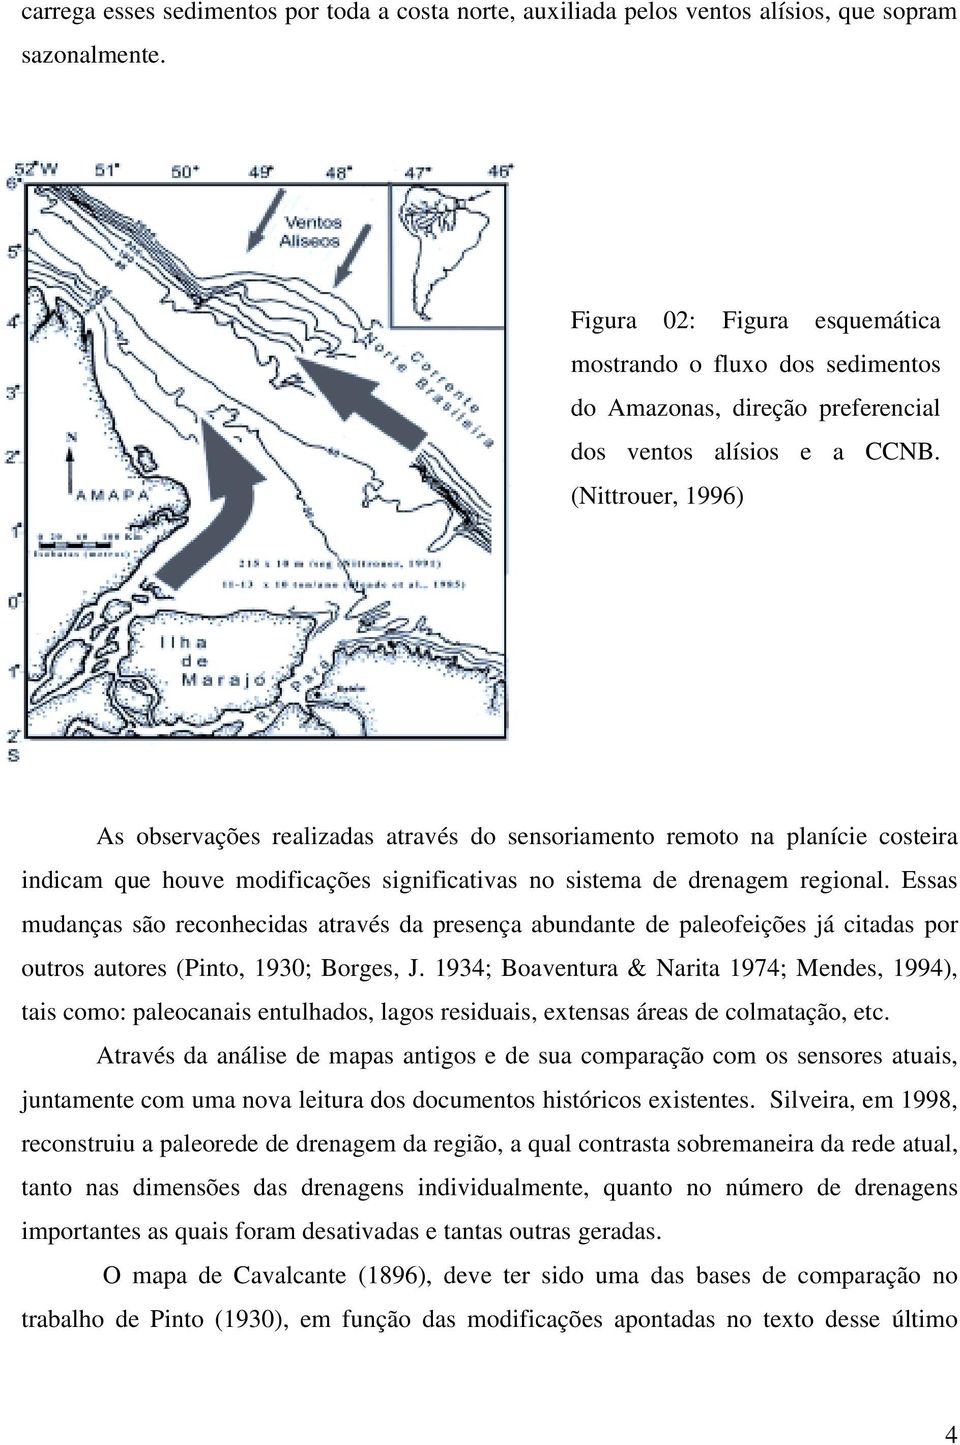 (Nittrouer, 1996) A rede de drenagem As observações realizadas através do sensoriamento remoto na planície costeira indicam que houve modificações significativas no sistema de drenagem regional.